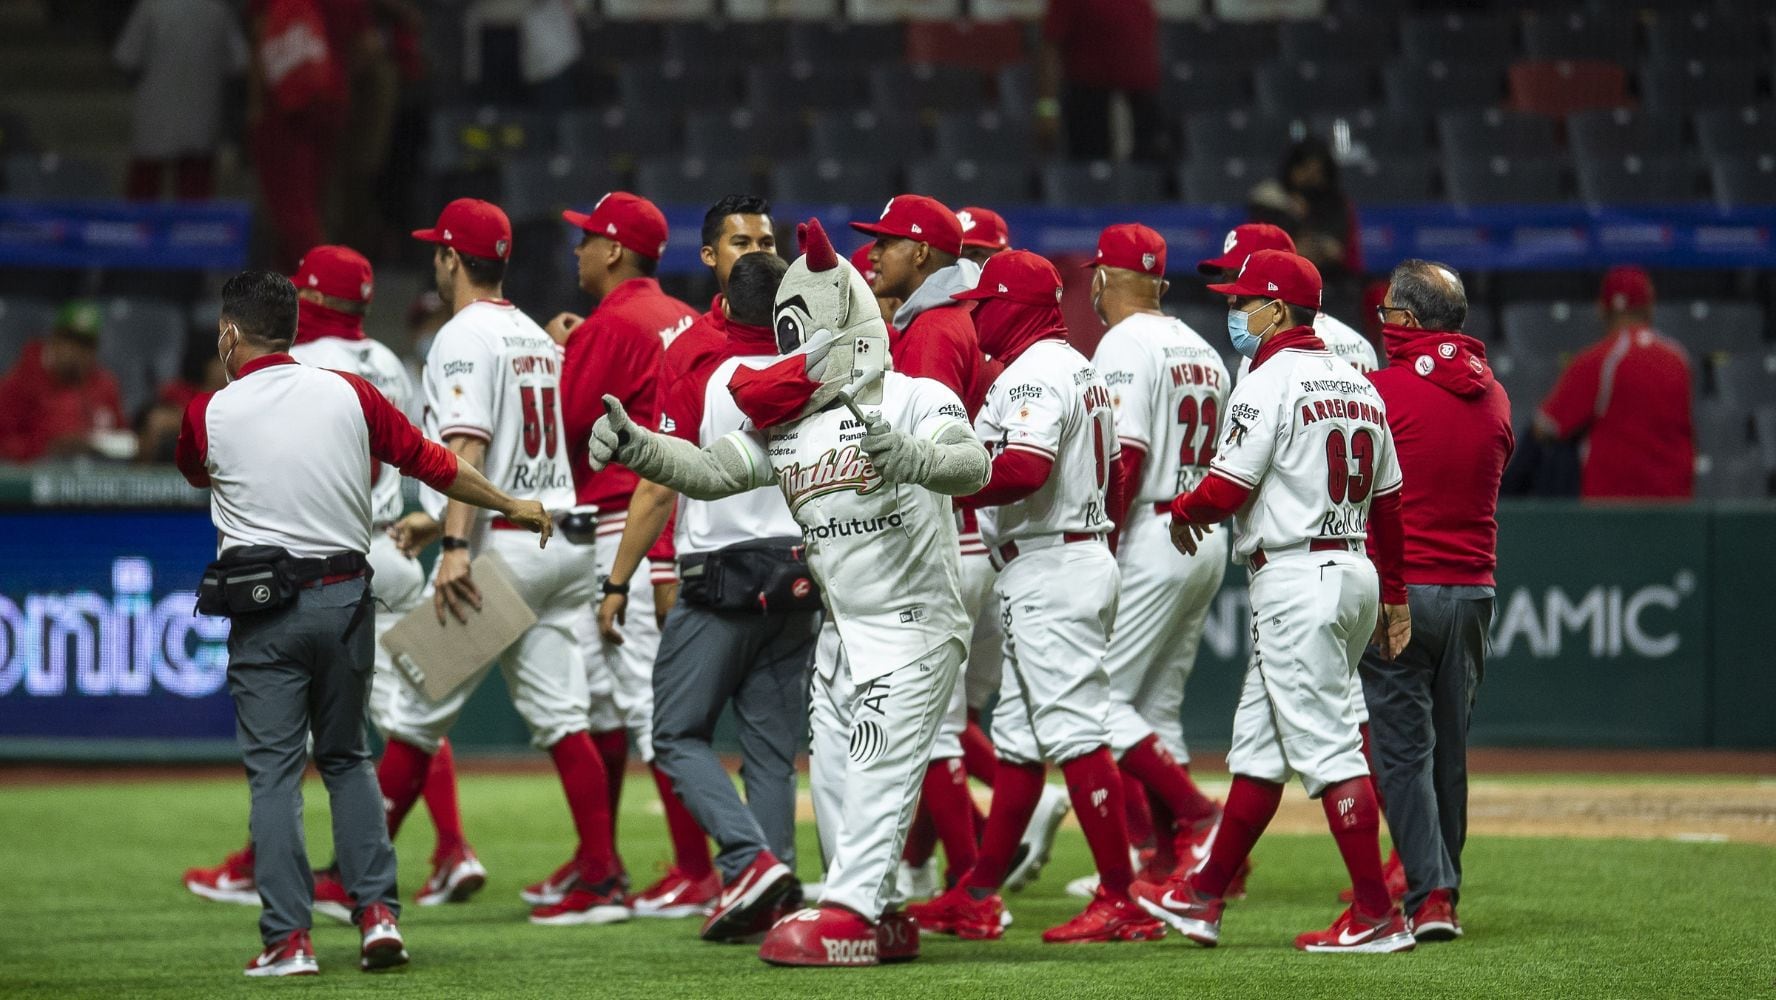 Los Diablos Rojos del México volverán a jugar contra los Yankees. (Foto: Mexsport)